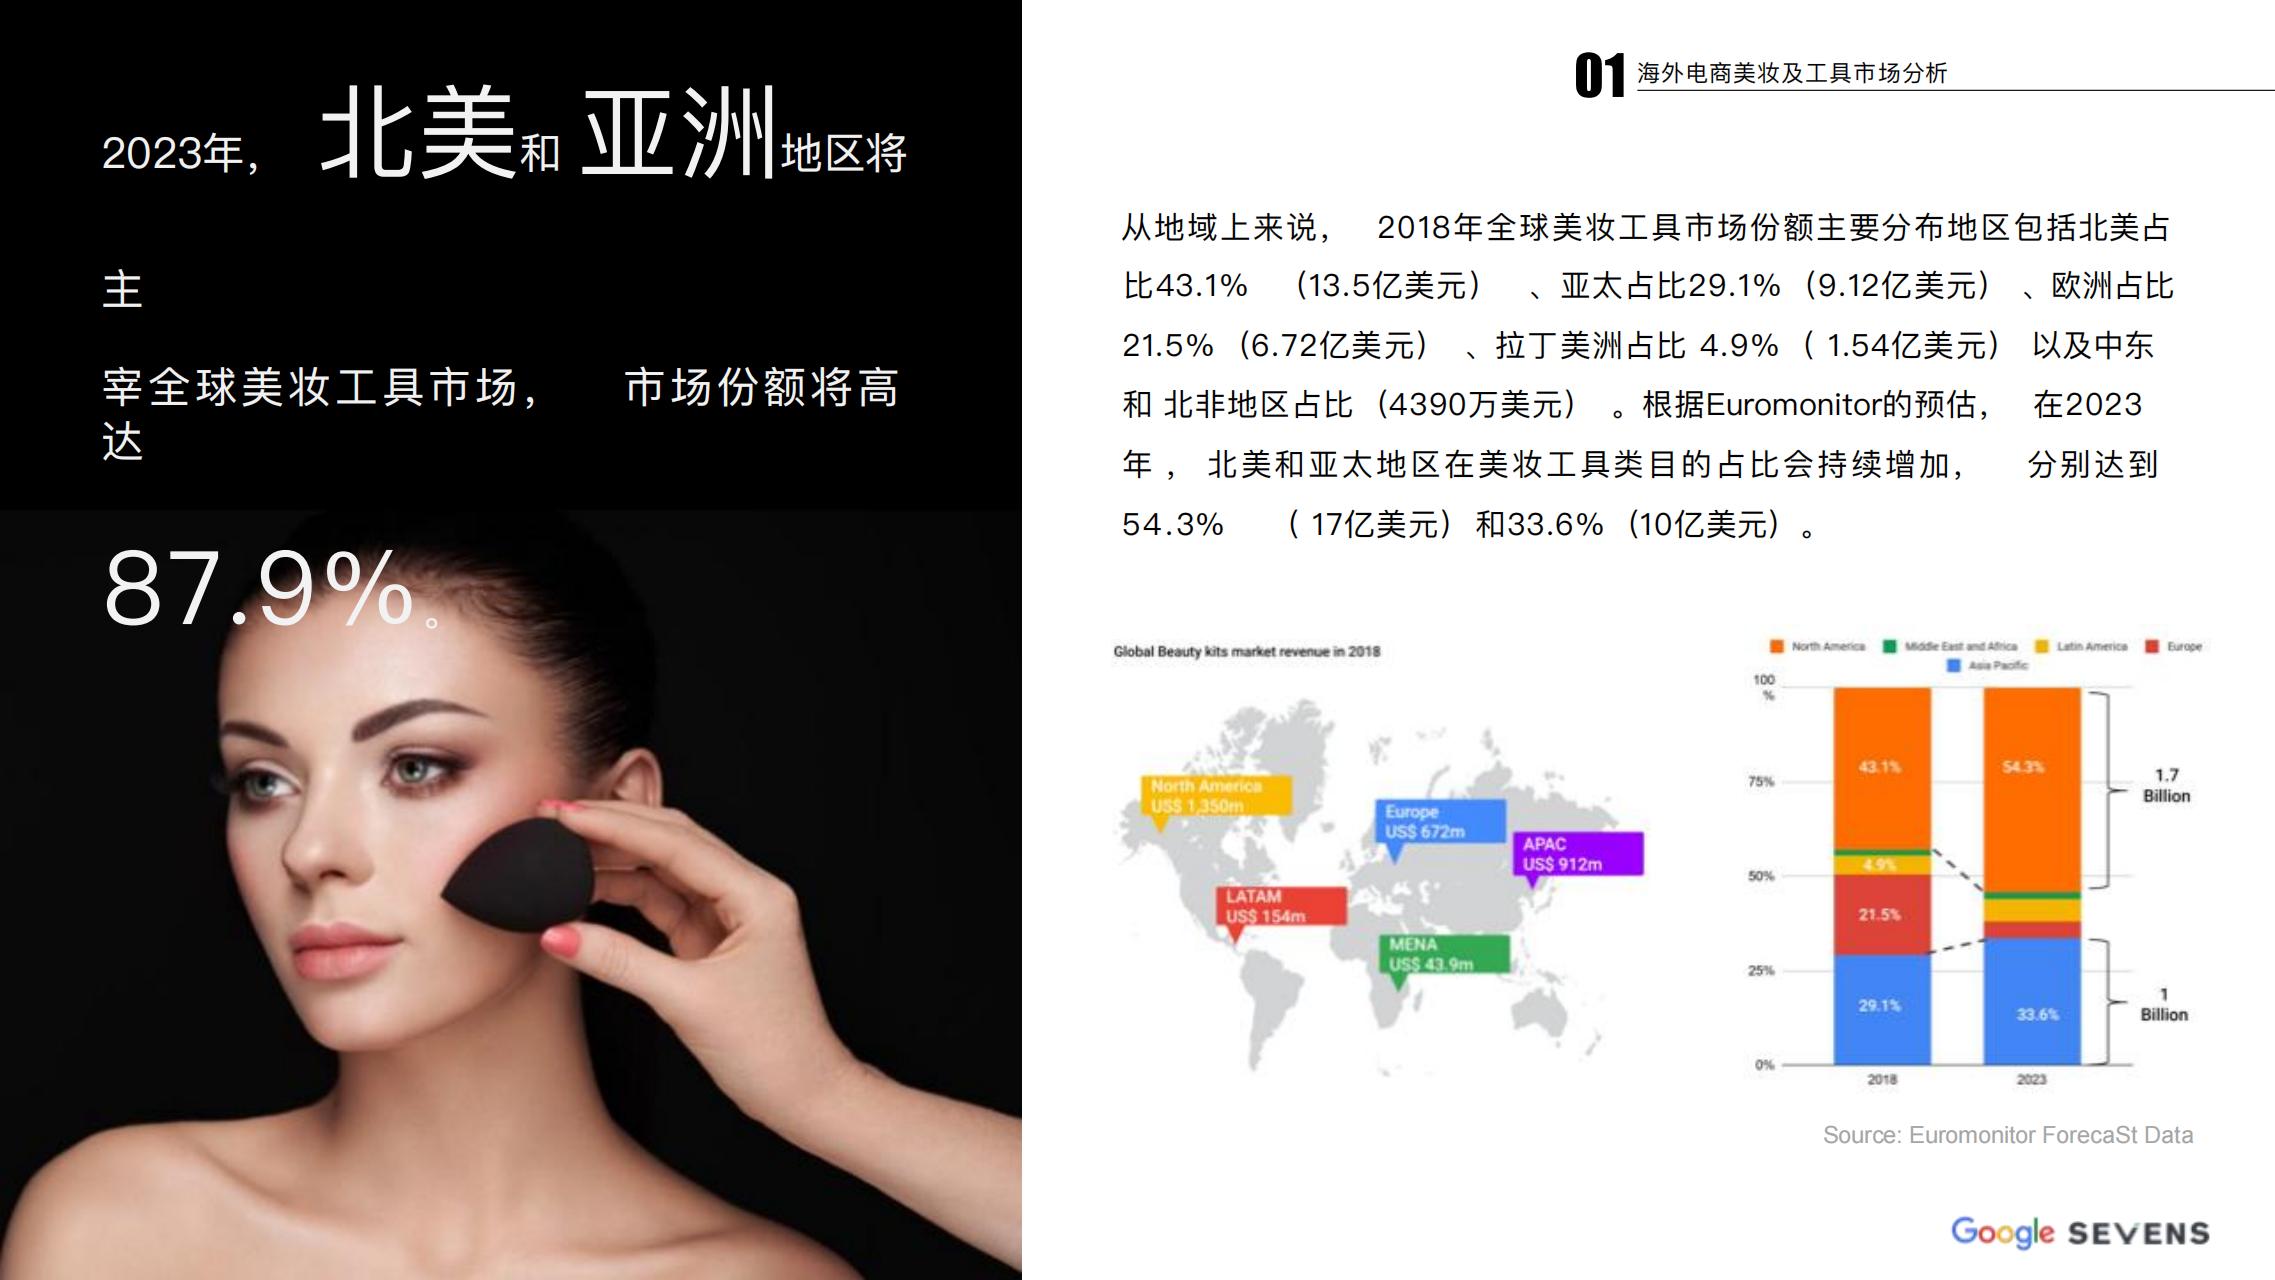 2019 海外美妆及工具行业发展报告_04.jpg